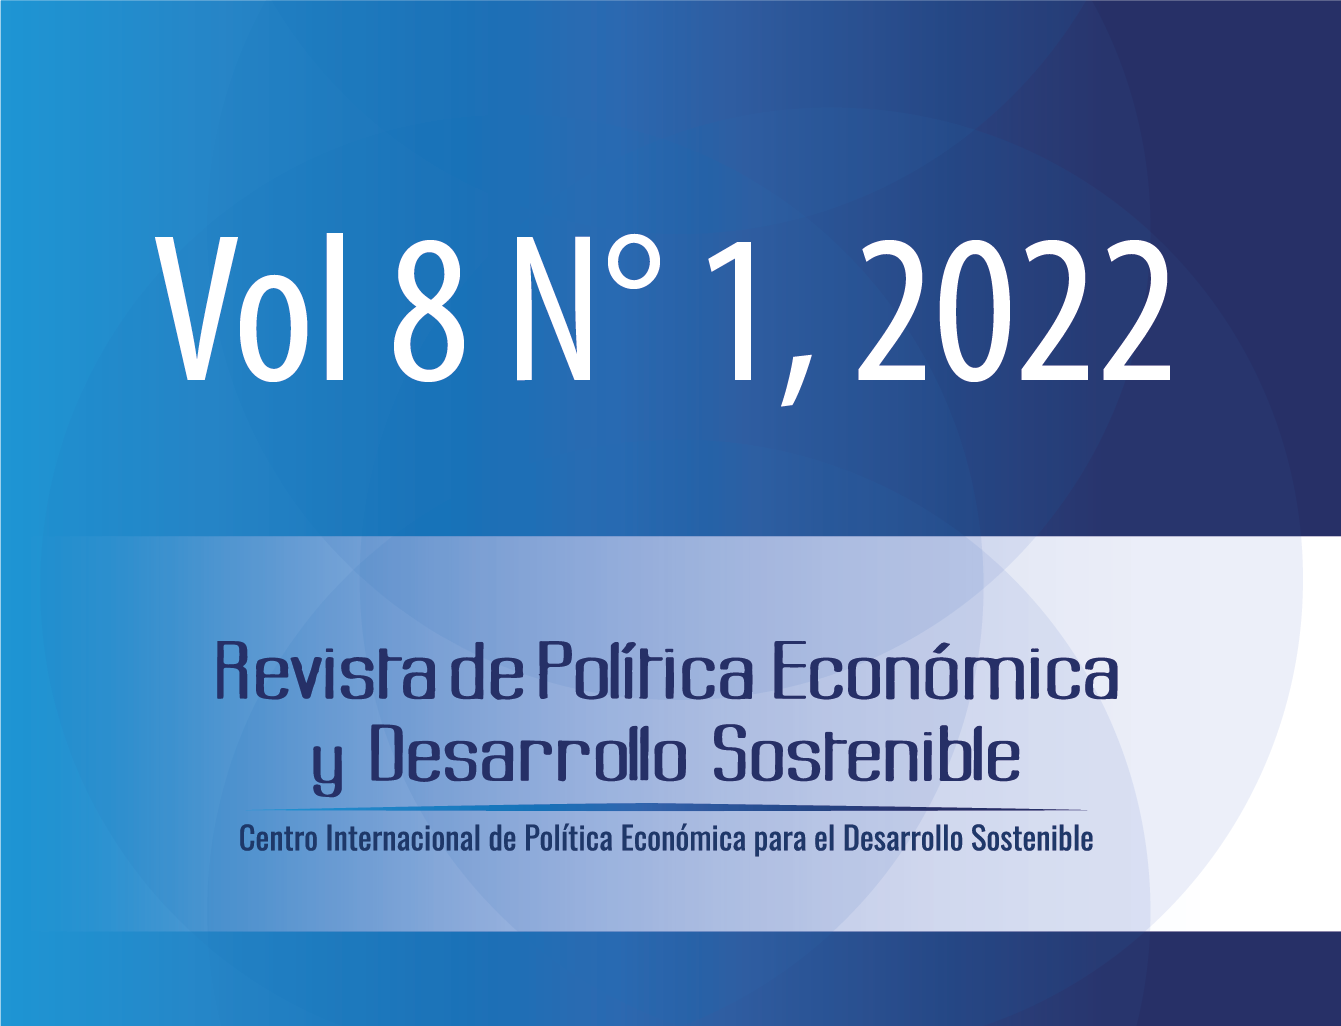 					Ver Vol. 8 Núm. 1 (2022): Revista Política Económica y Desarrollo Sostenible (JULIO-DICIEMBRE)
				